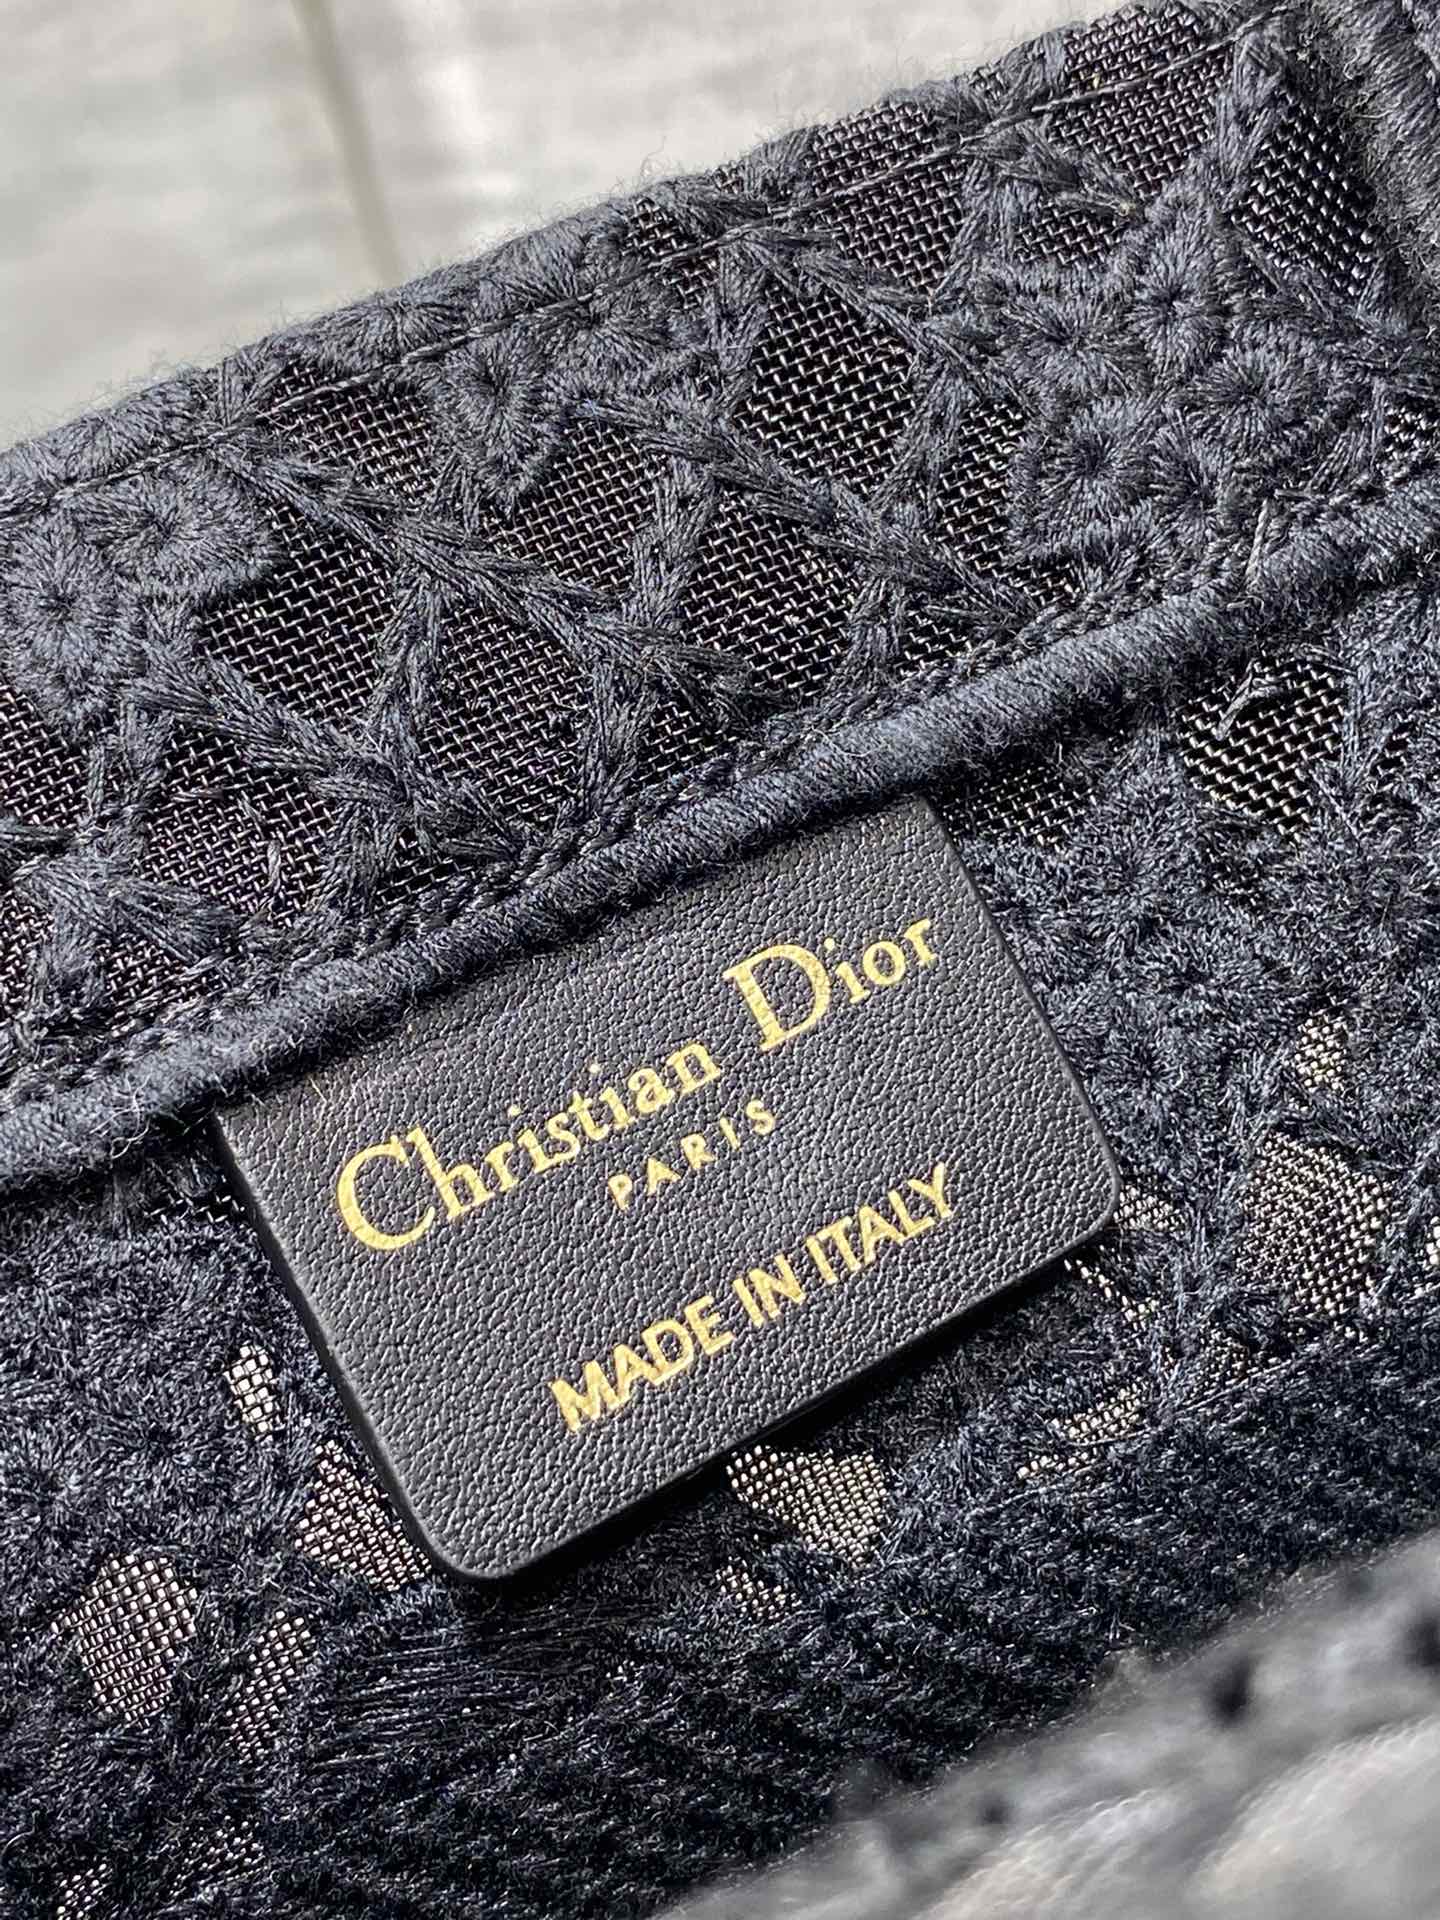 迪奥Dior顶级进口原厂绣花购物袋小号现货️Tote最新尺寸小号被种草了这个包比原本的小号短一点显得非常